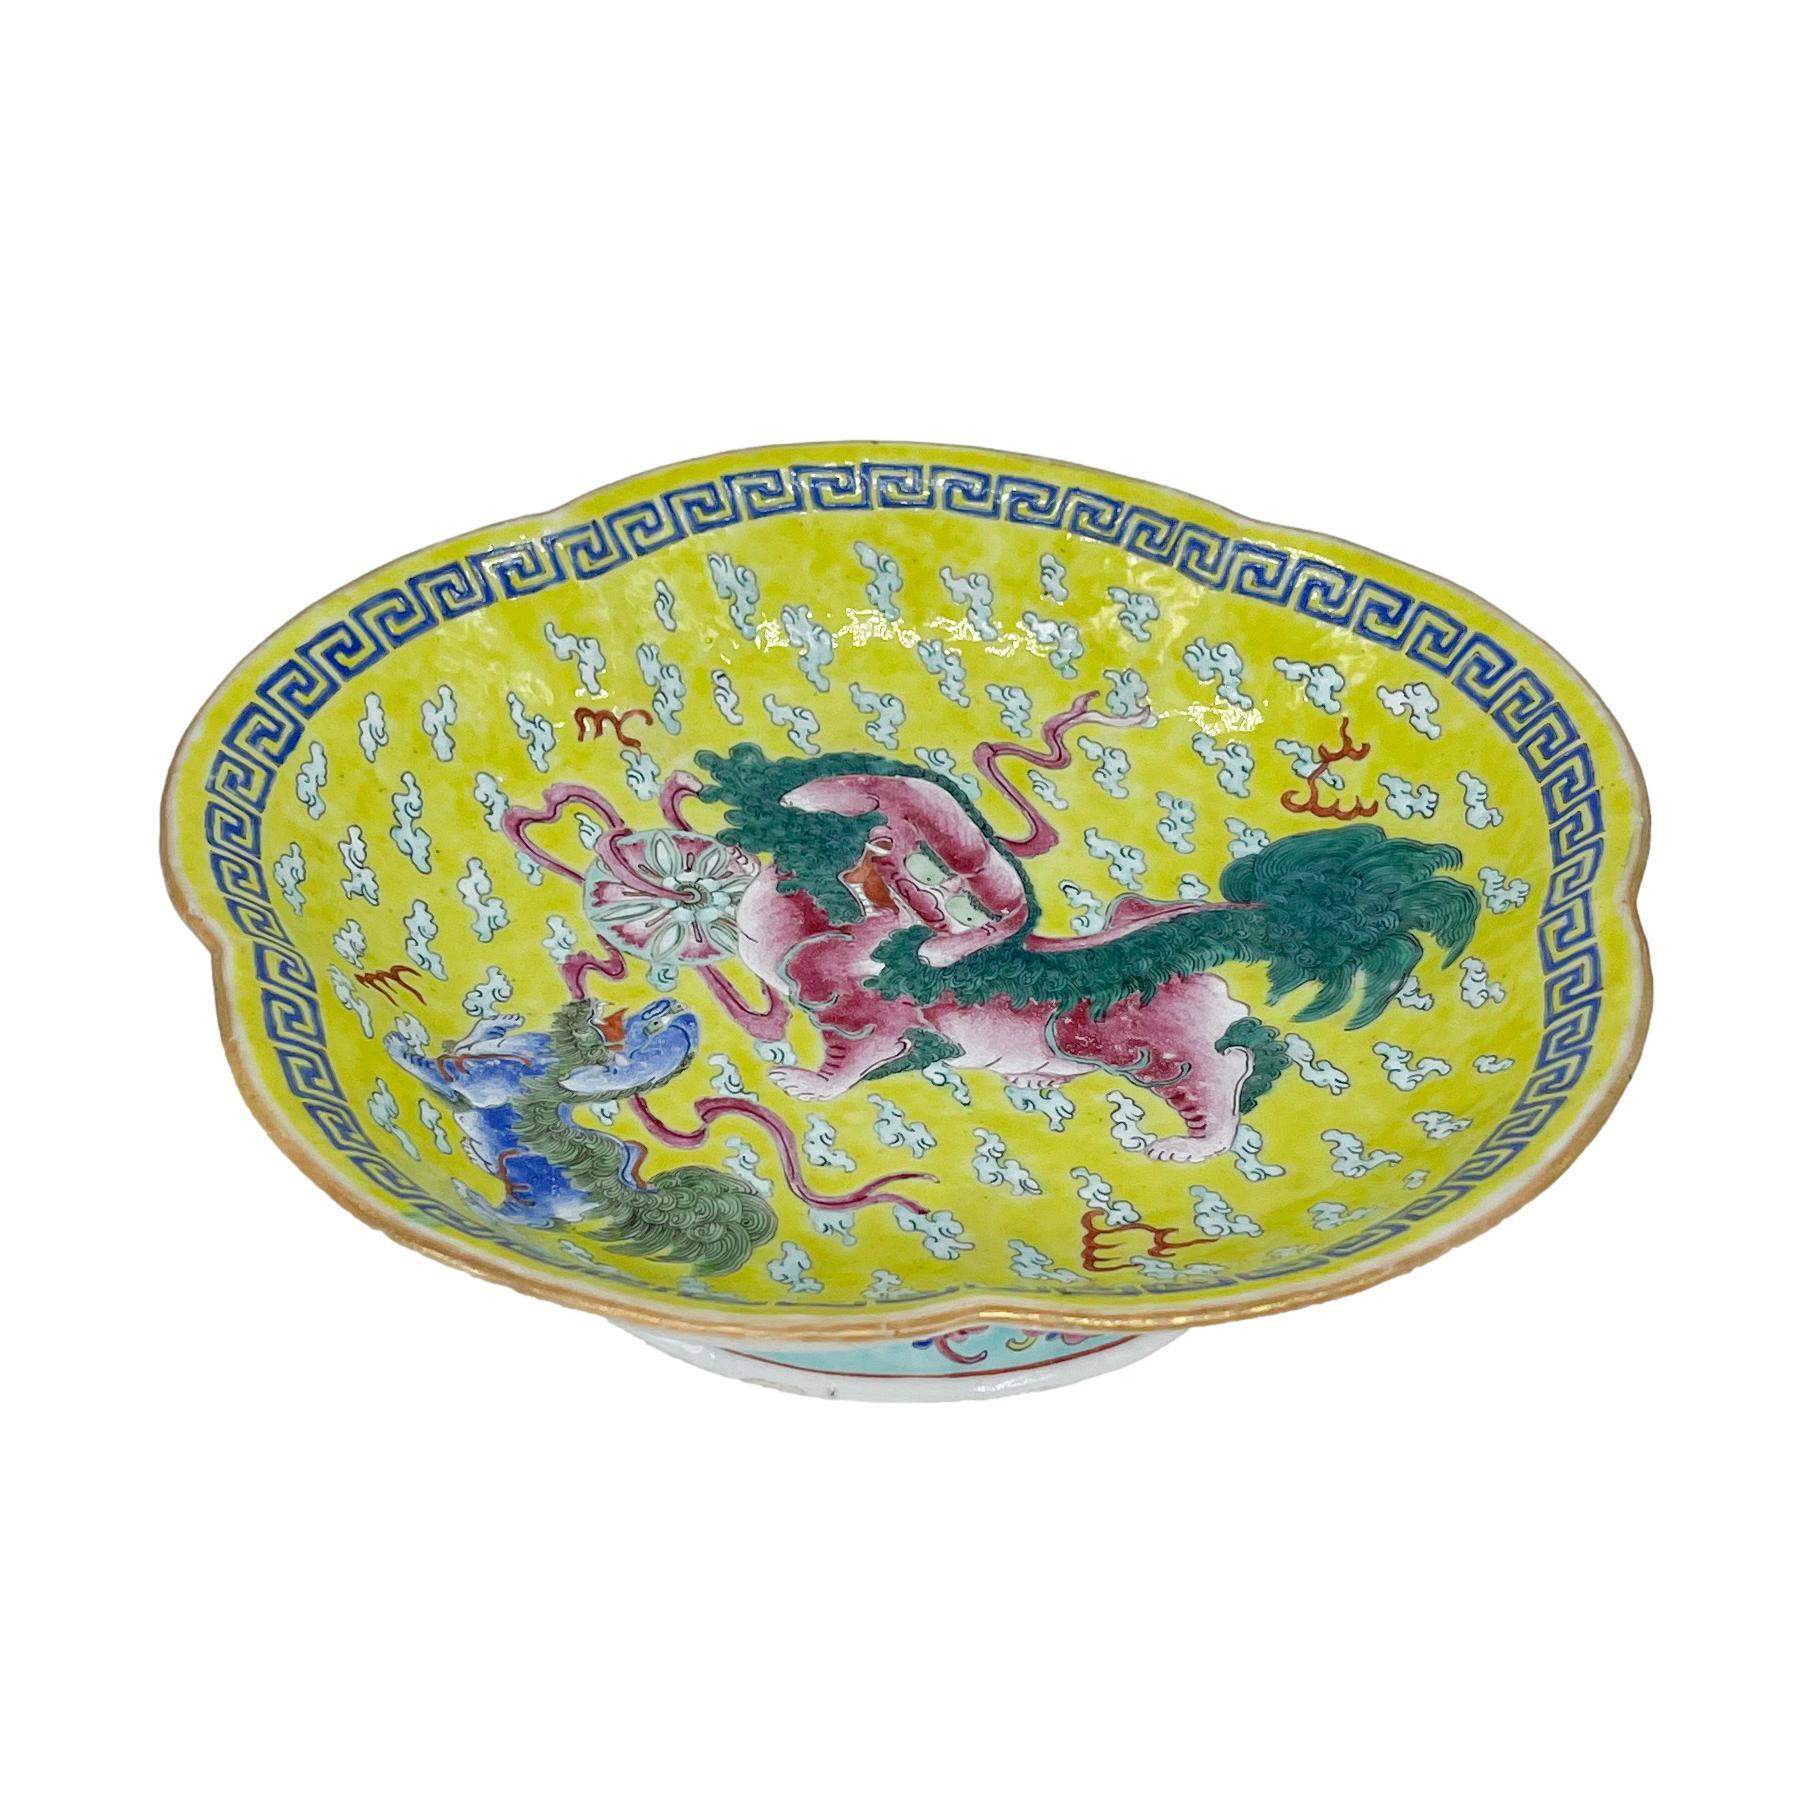 Chinesisches Export-Porzellan Famille Jeune (Gelb-Grund) Fußschale, Qing-Dynastie, Tongzhi Ära (1862-1874). Die fünflappige Schale ist mit einem männlichen, rosa glasierten Foo-Löwen inmitten von grün glasiertem Dschungel-Laub dekoriert, dessen